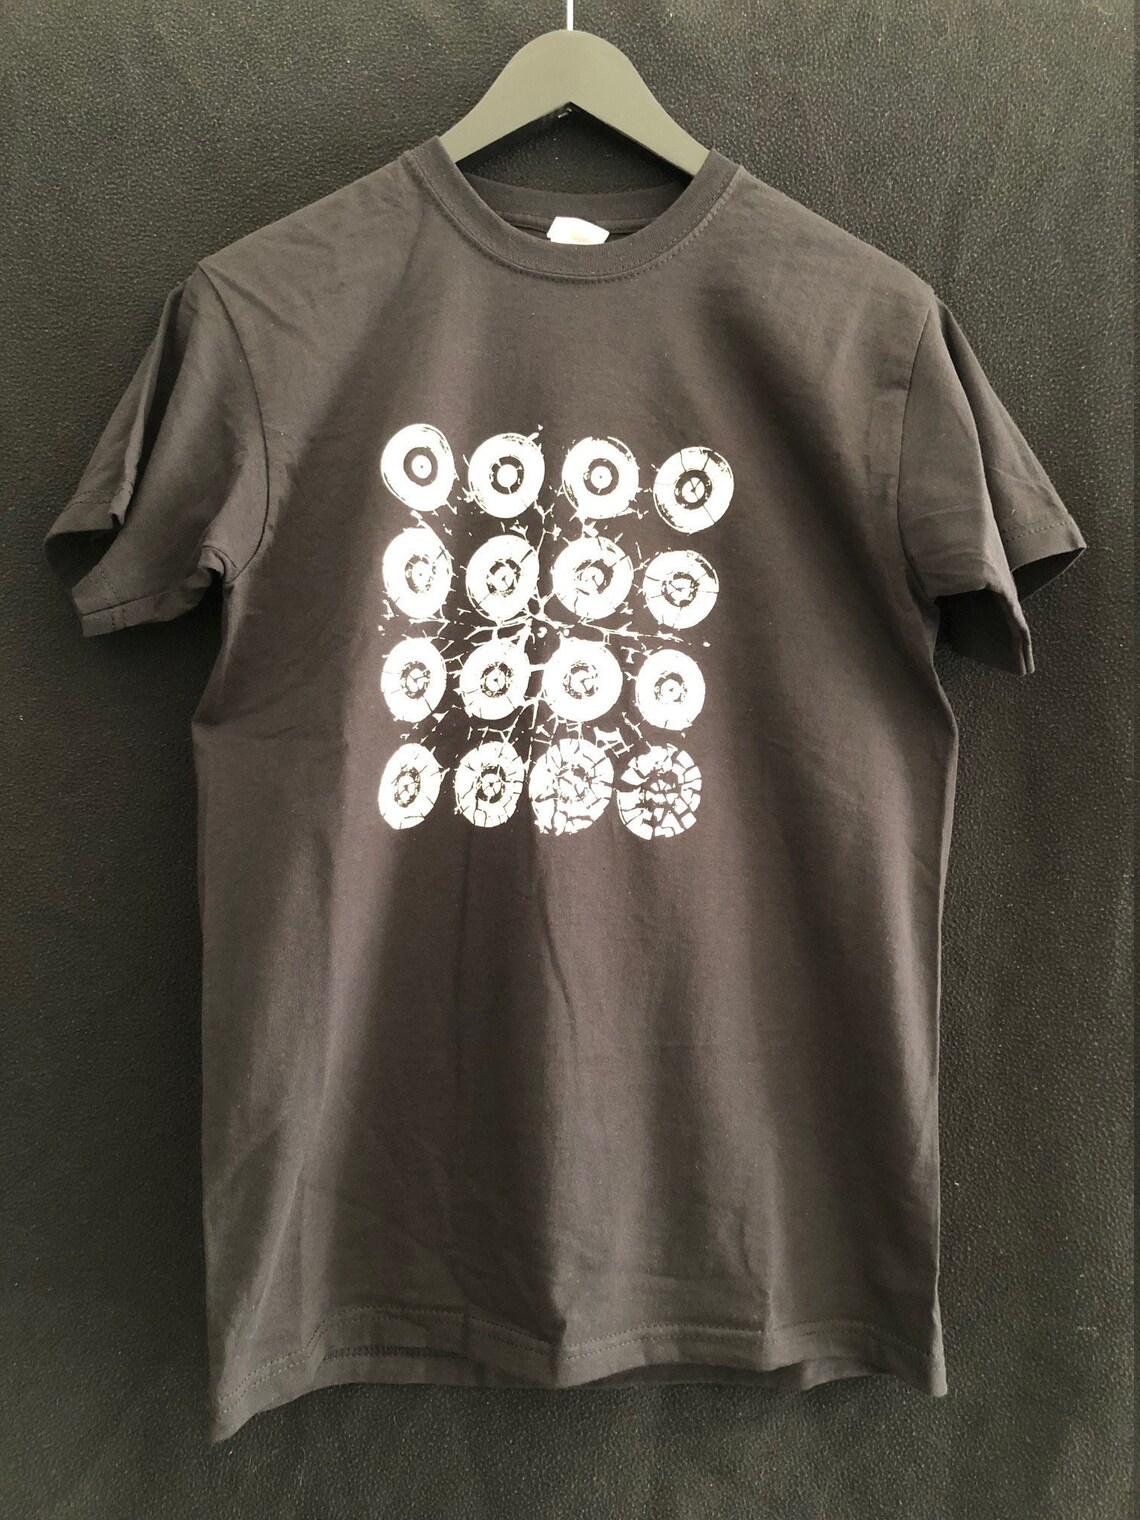 Broken Record T-shirt - Etsy